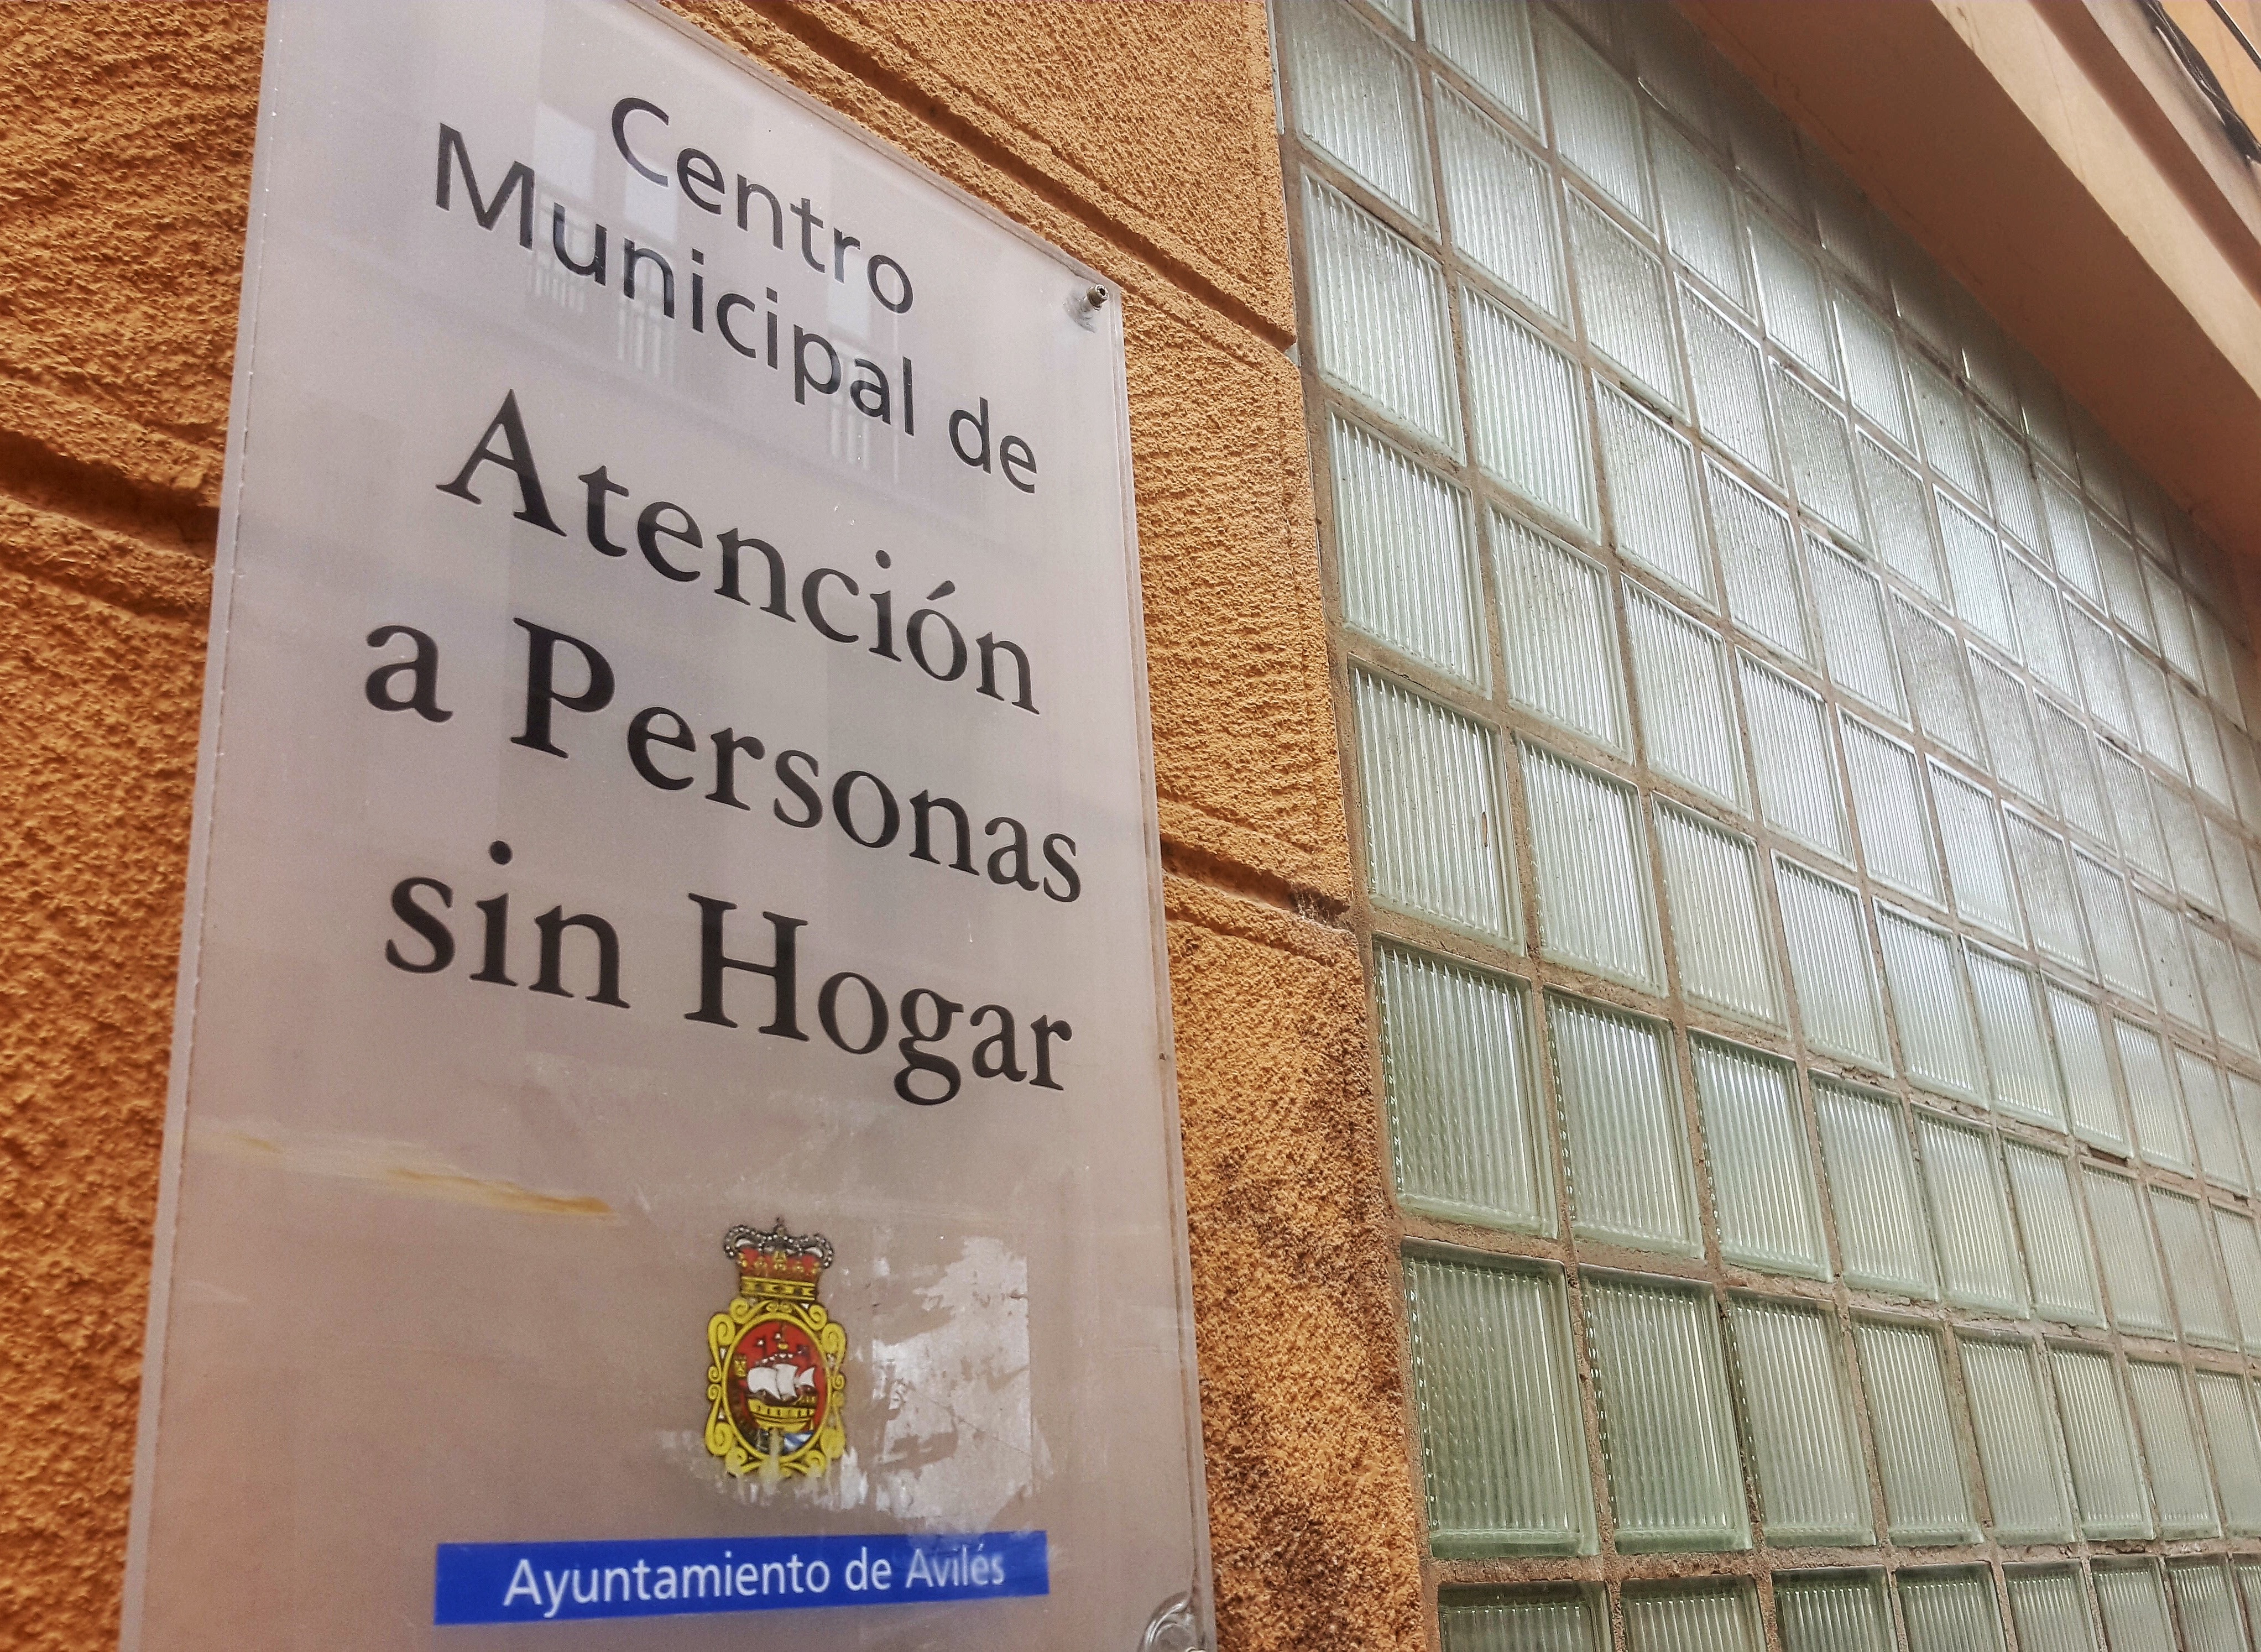 El Centro Municipal de Atención a Personas Sin Hogar programa un segundo pase de la sesión 